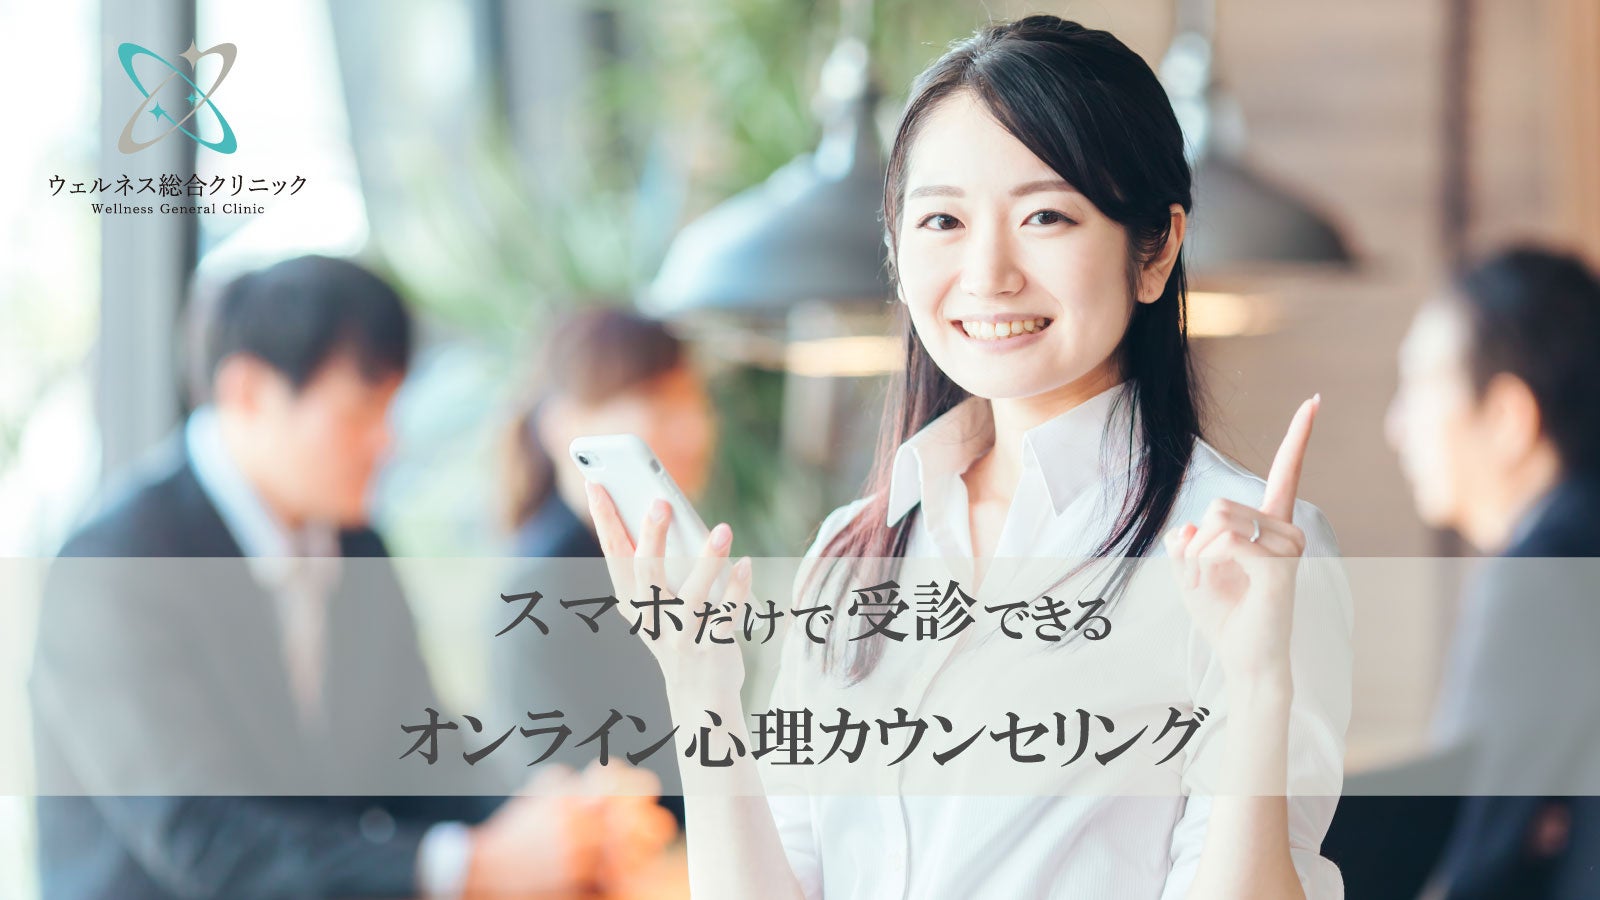 日本アルコン、10月10日「目の愛護デー」に花火を打ち上げ